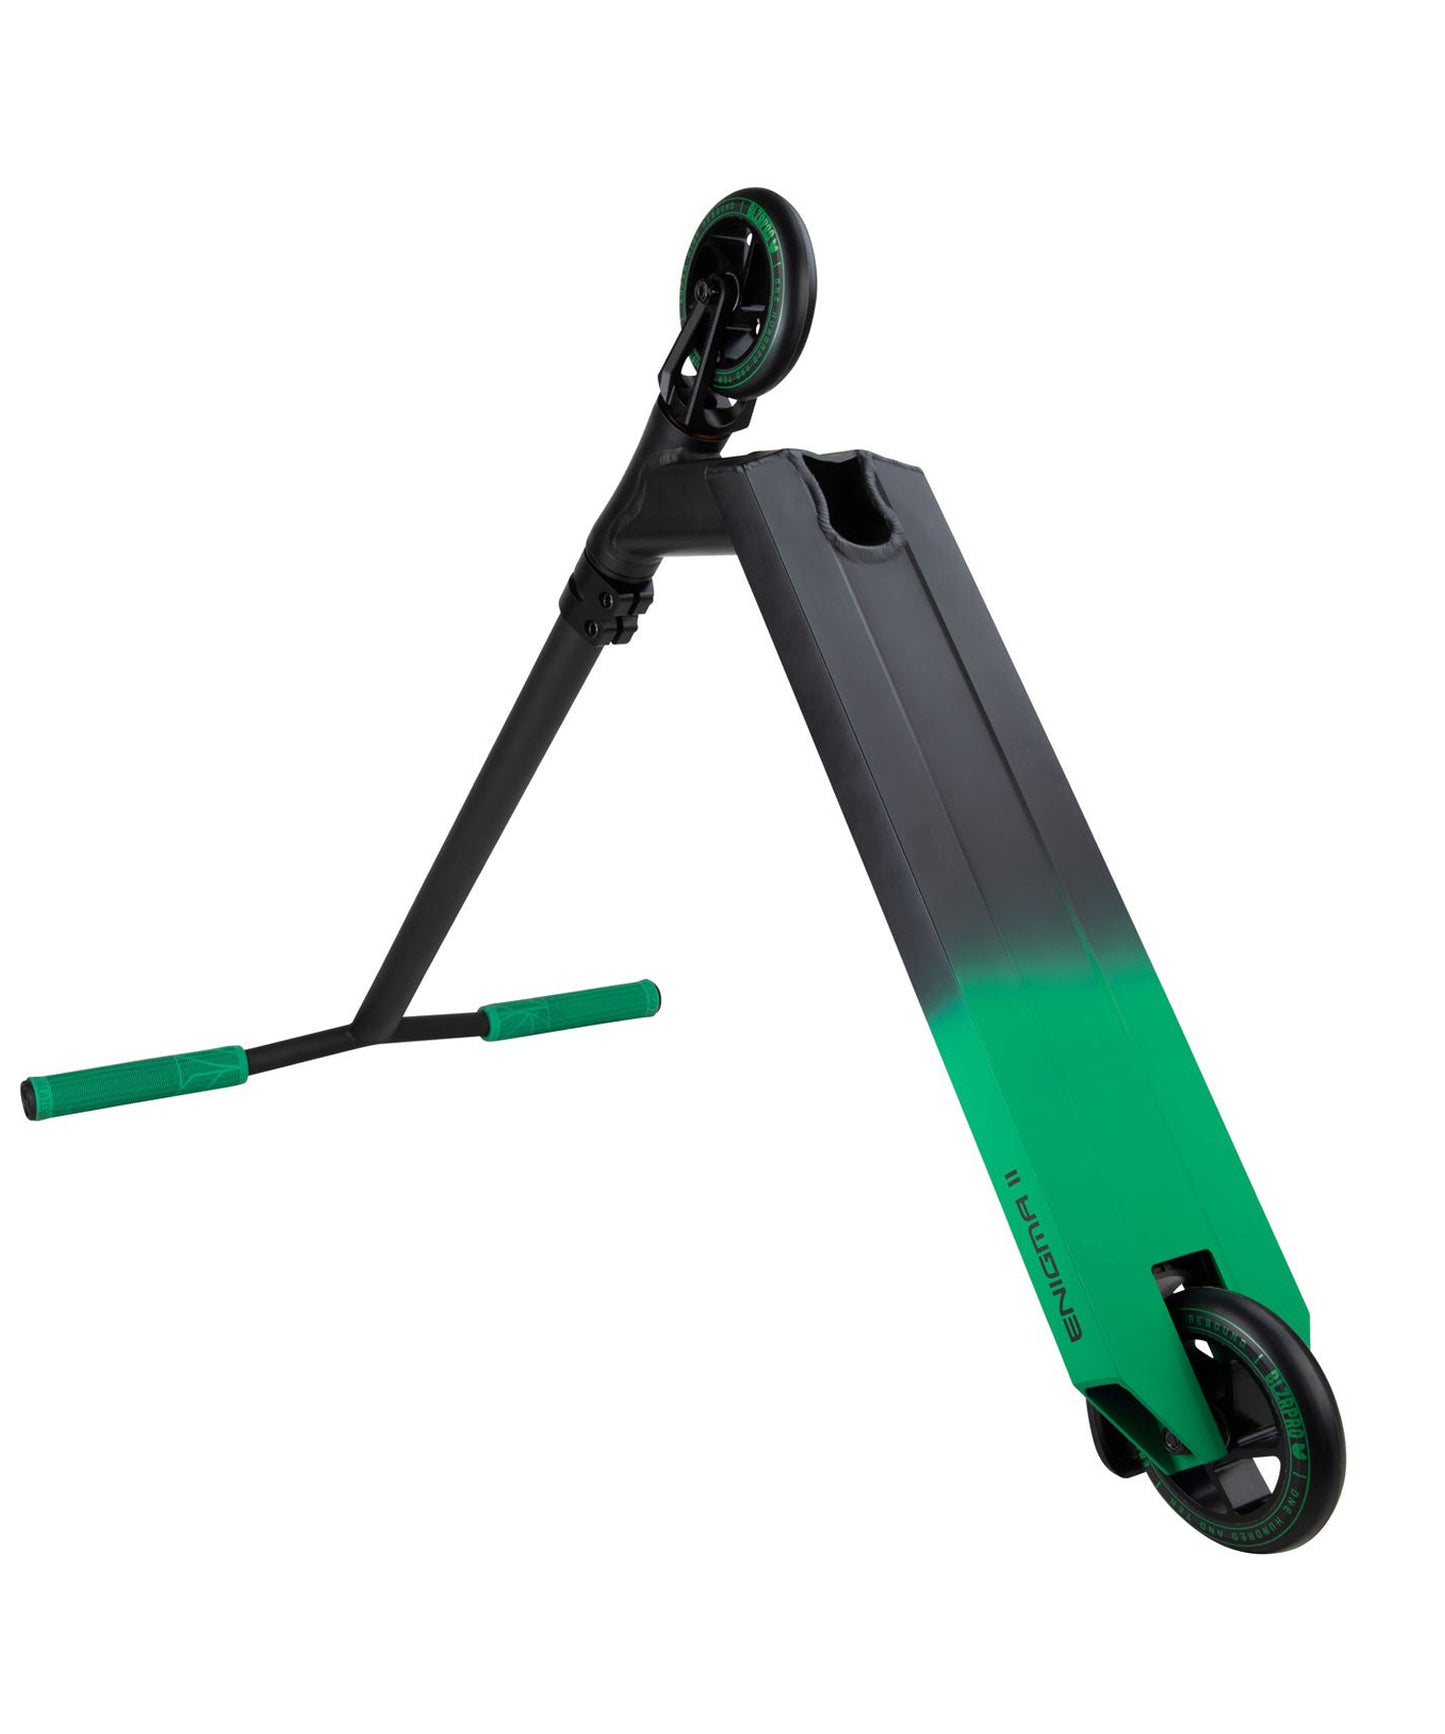 blazer-pro-scooter-completo-enigma-2-color-negro-verde-aluminio-de-calidad-totalmente-profesional.